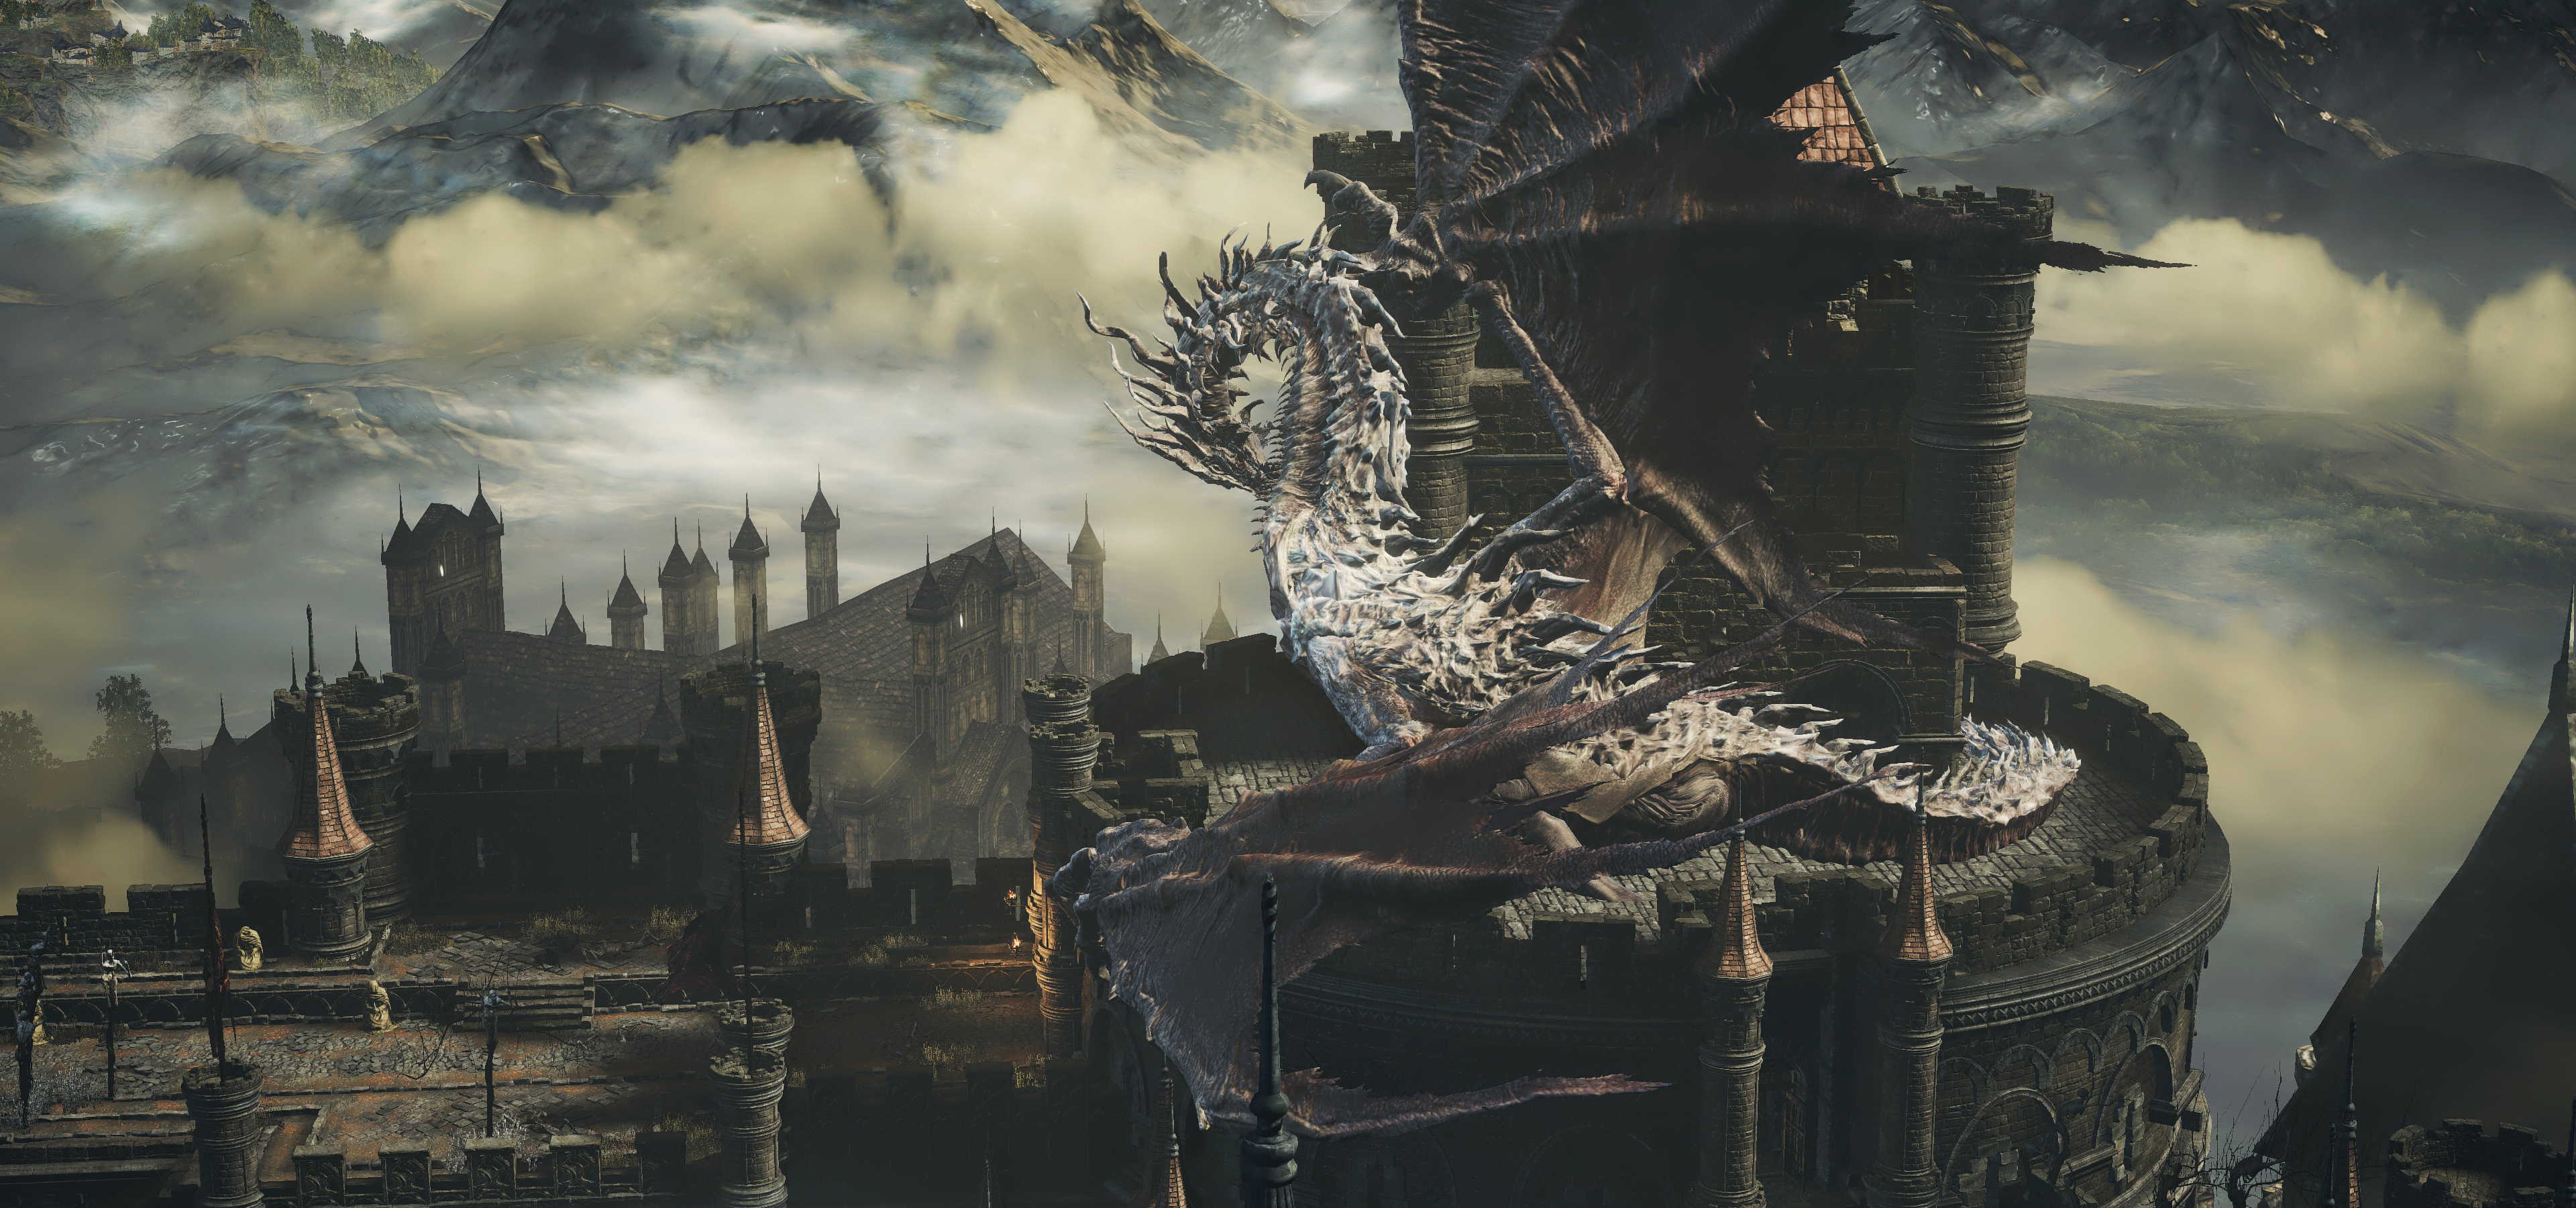 Dark Souls Iii Dragon Wallpaper Resolution 3840x1800 Id 739427 Wallha Com